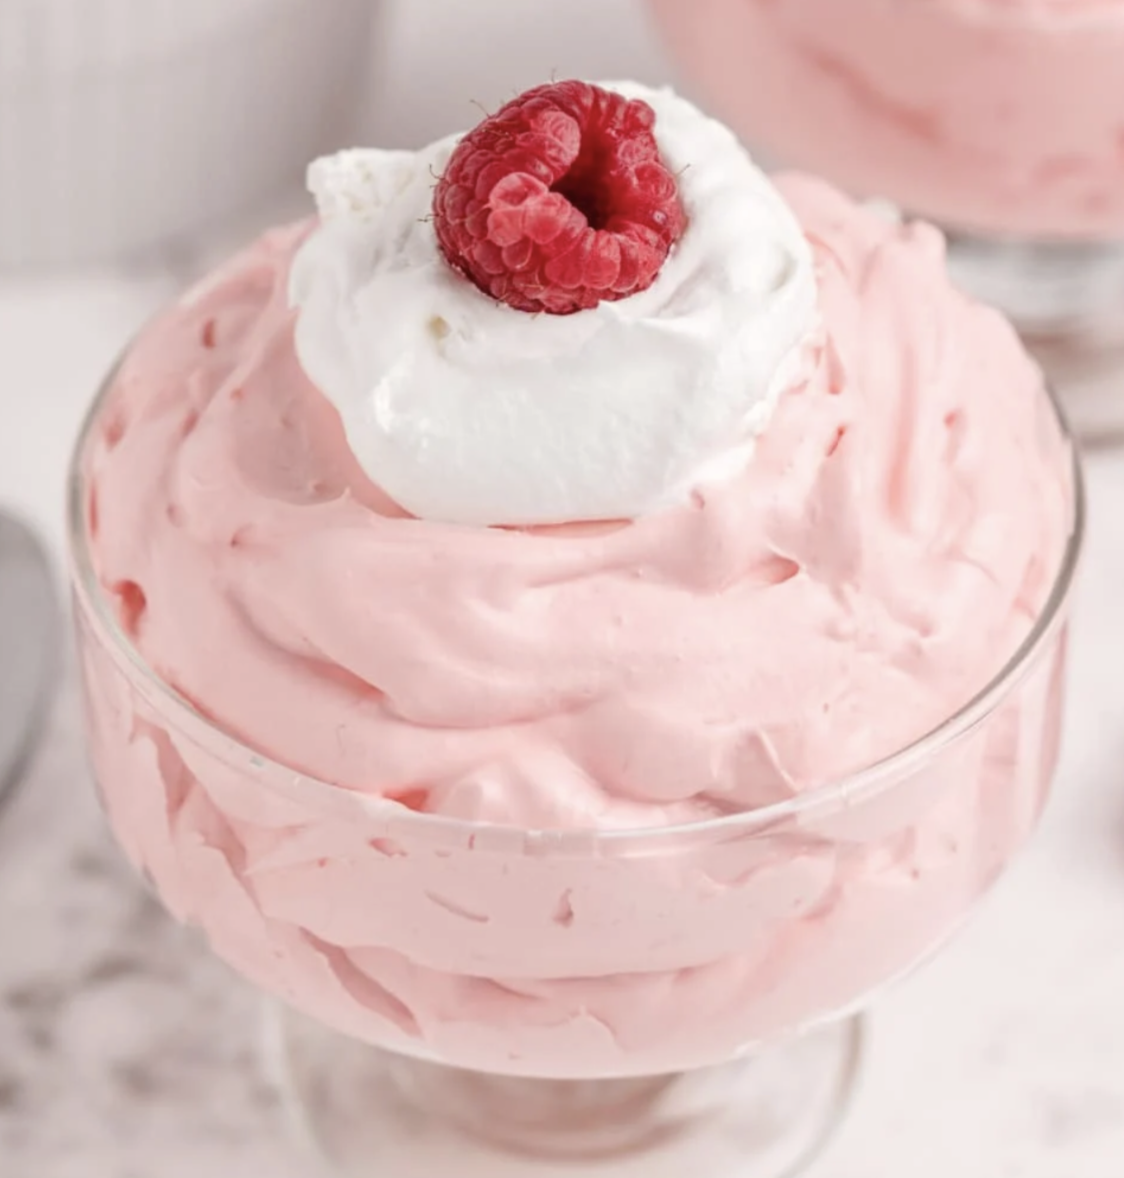 Creamy Raspberry Jello Recipe